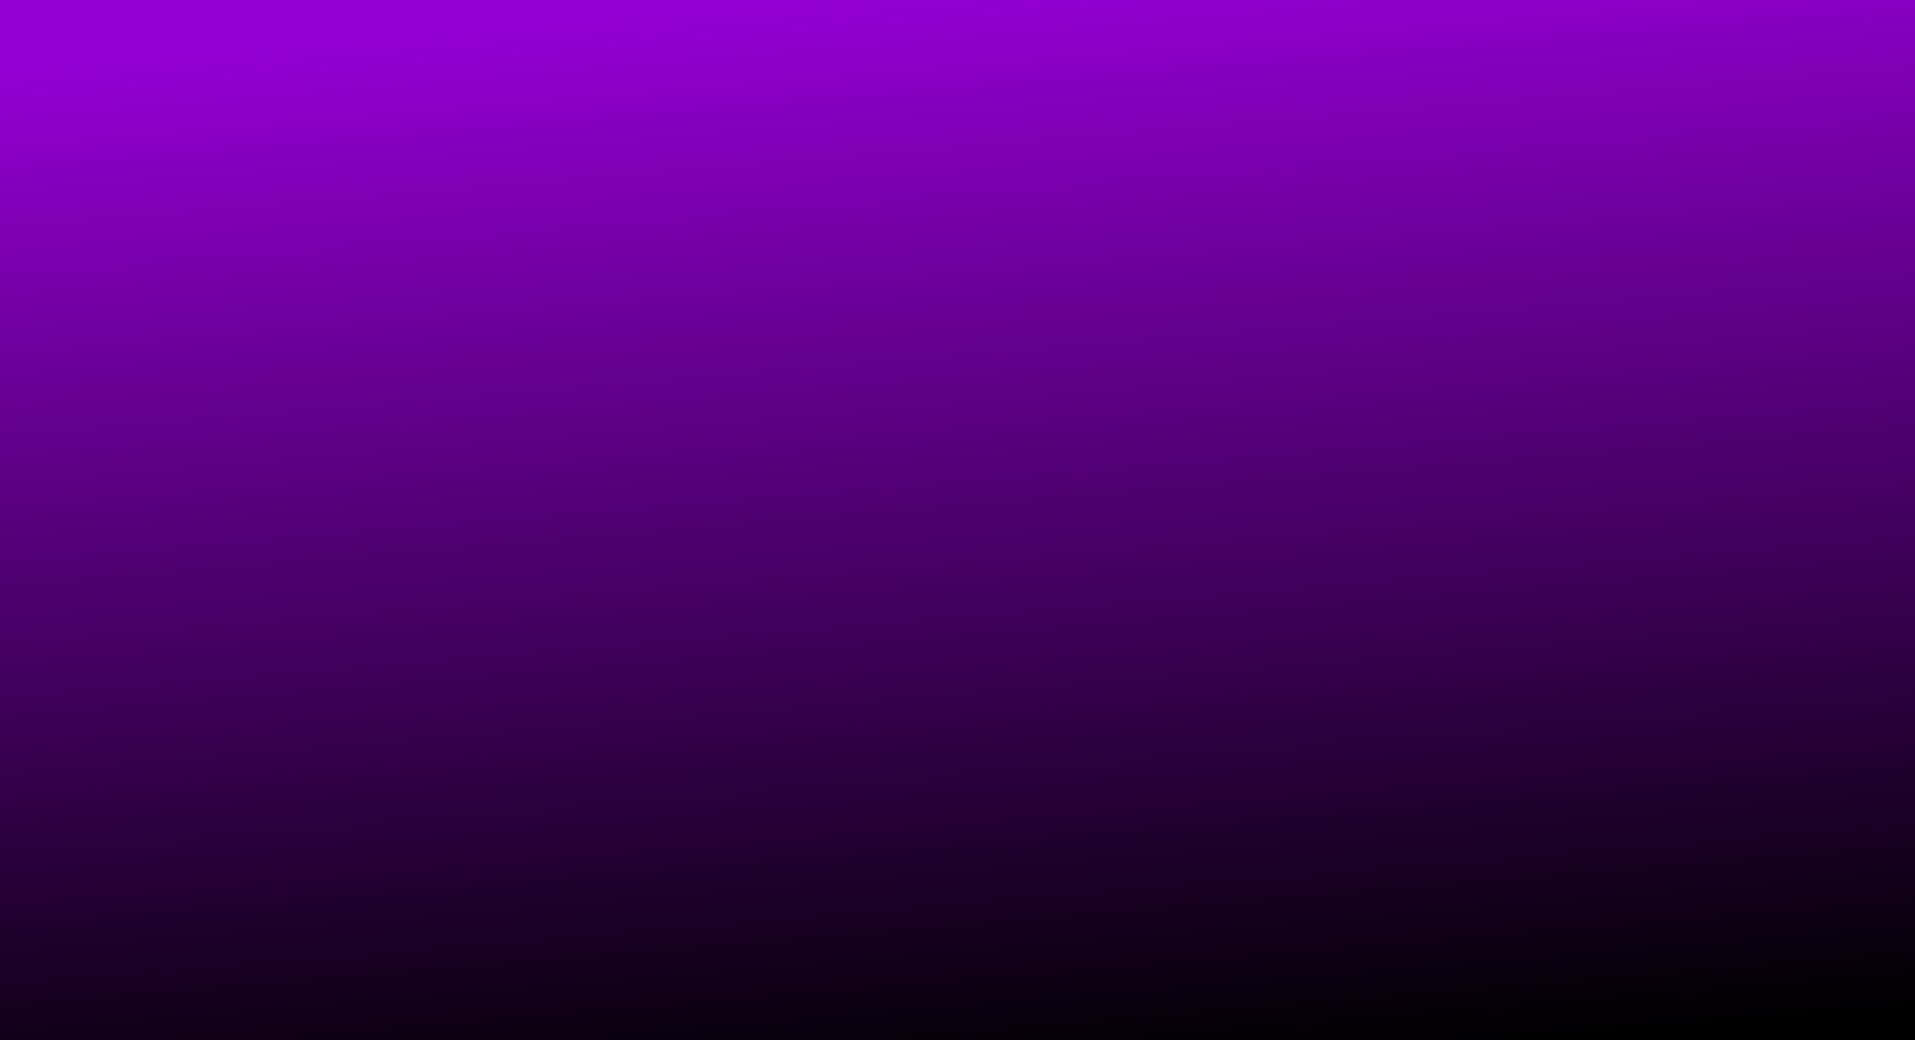 A Stylish Violet Background